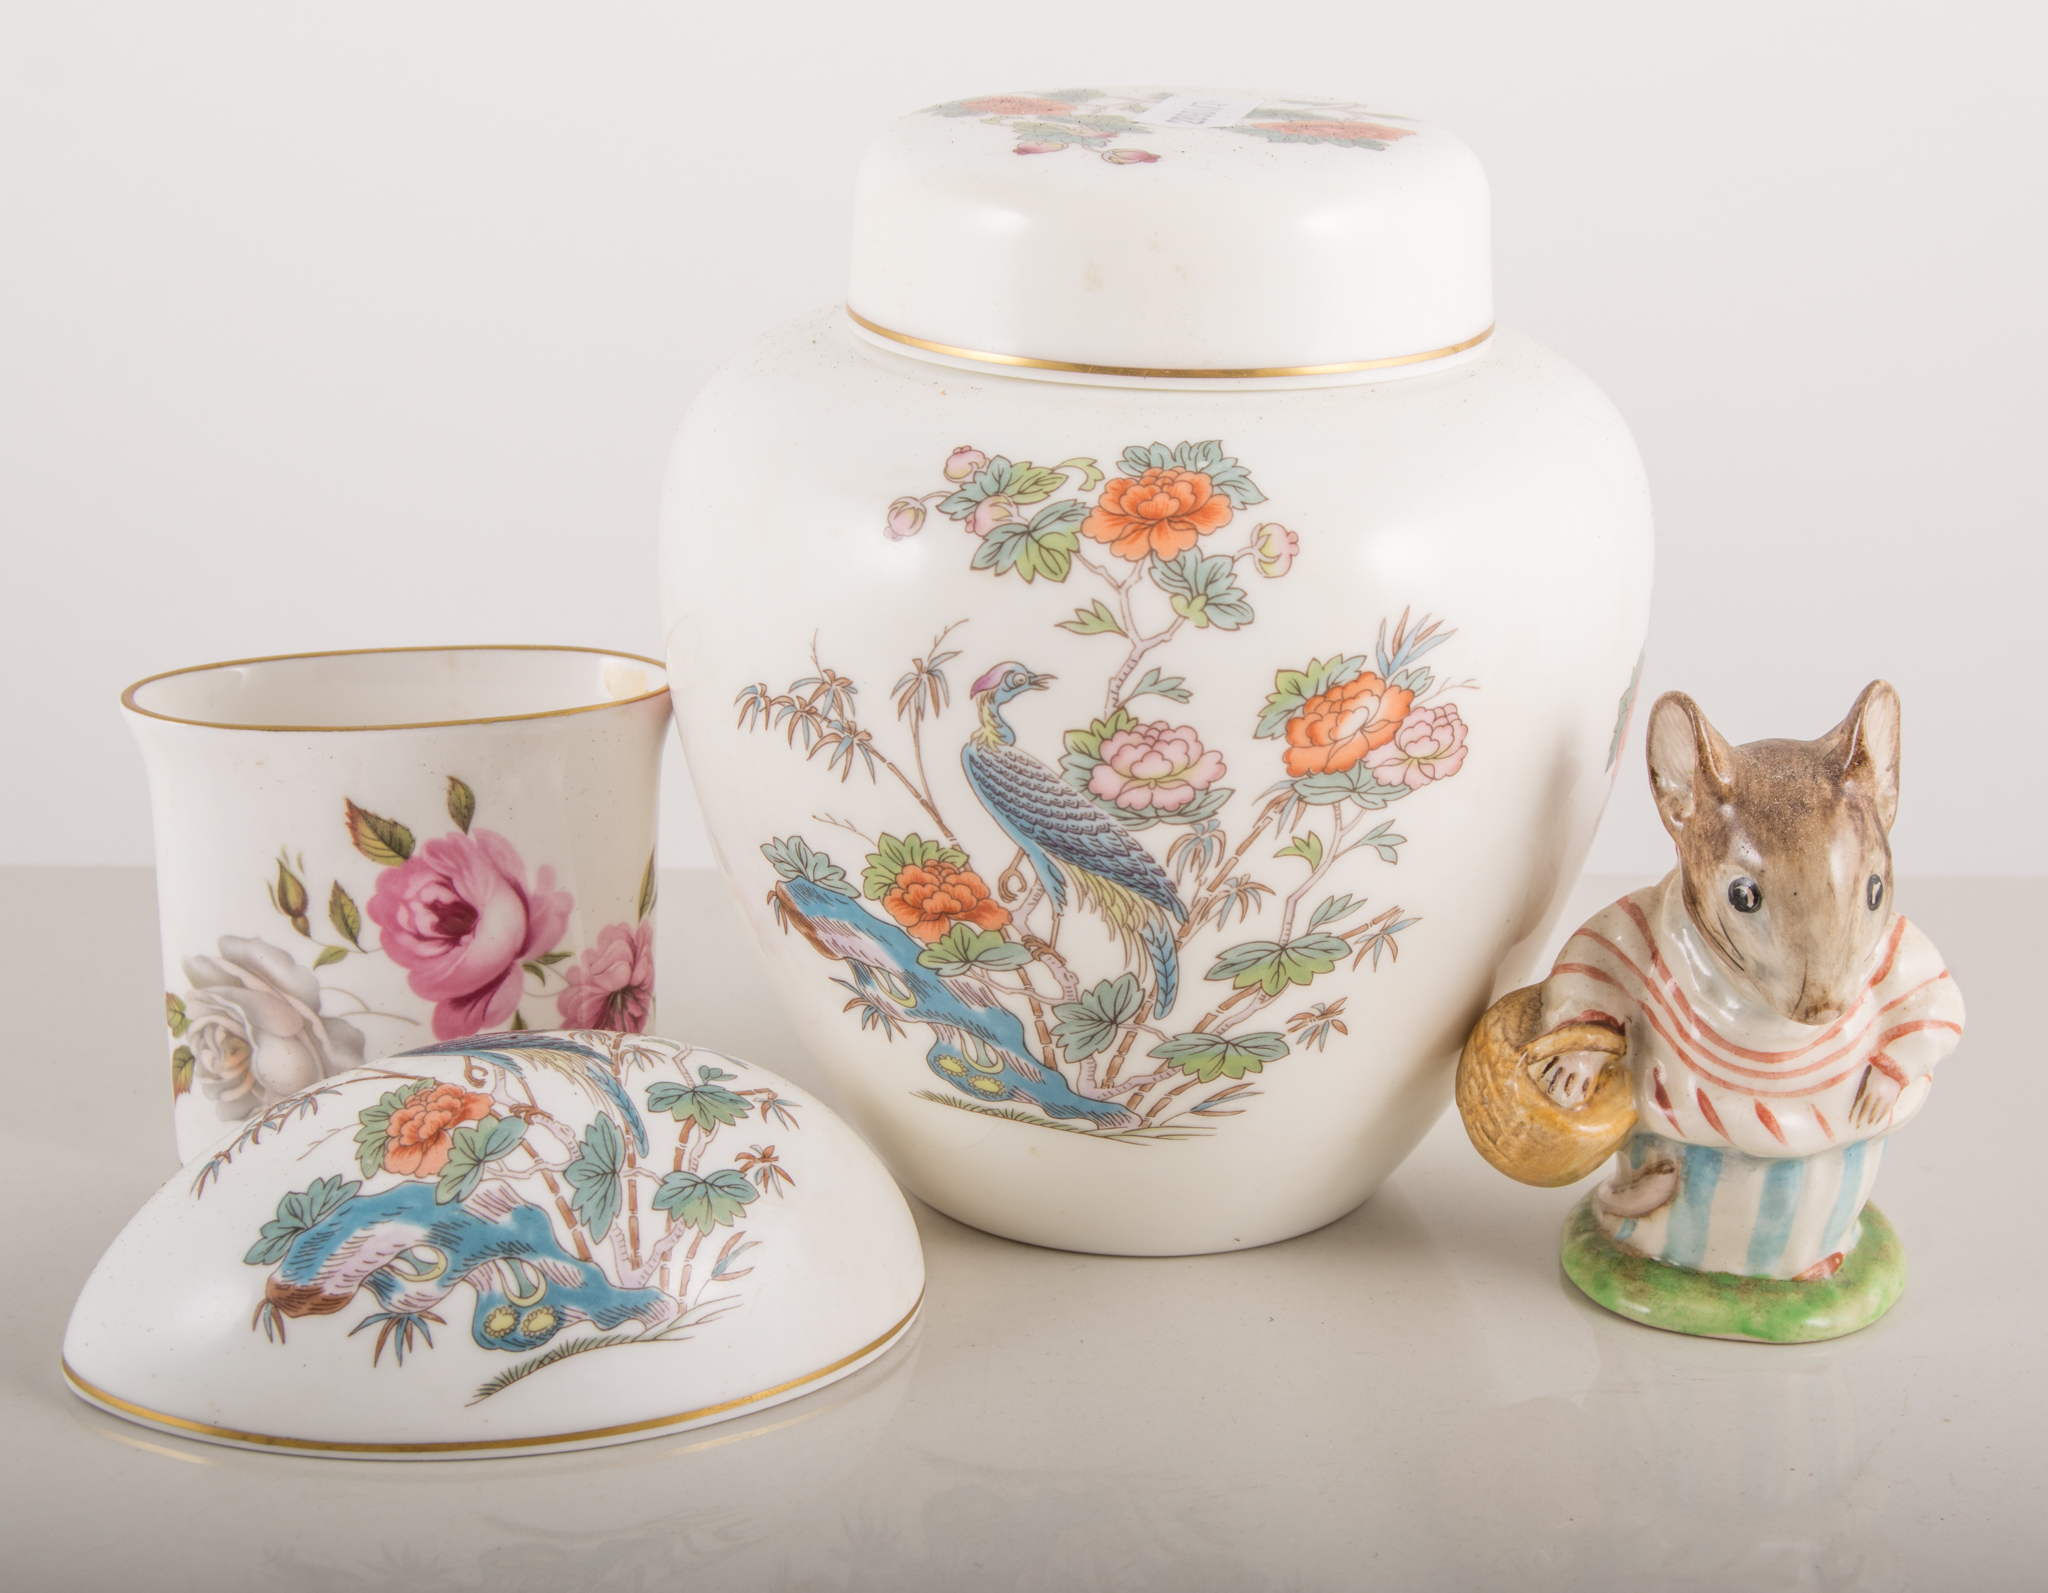 Beswick Beatrix Potter model, Mrs Tittlemouse; Wedgwood, Crane china; Worcester china, etc.